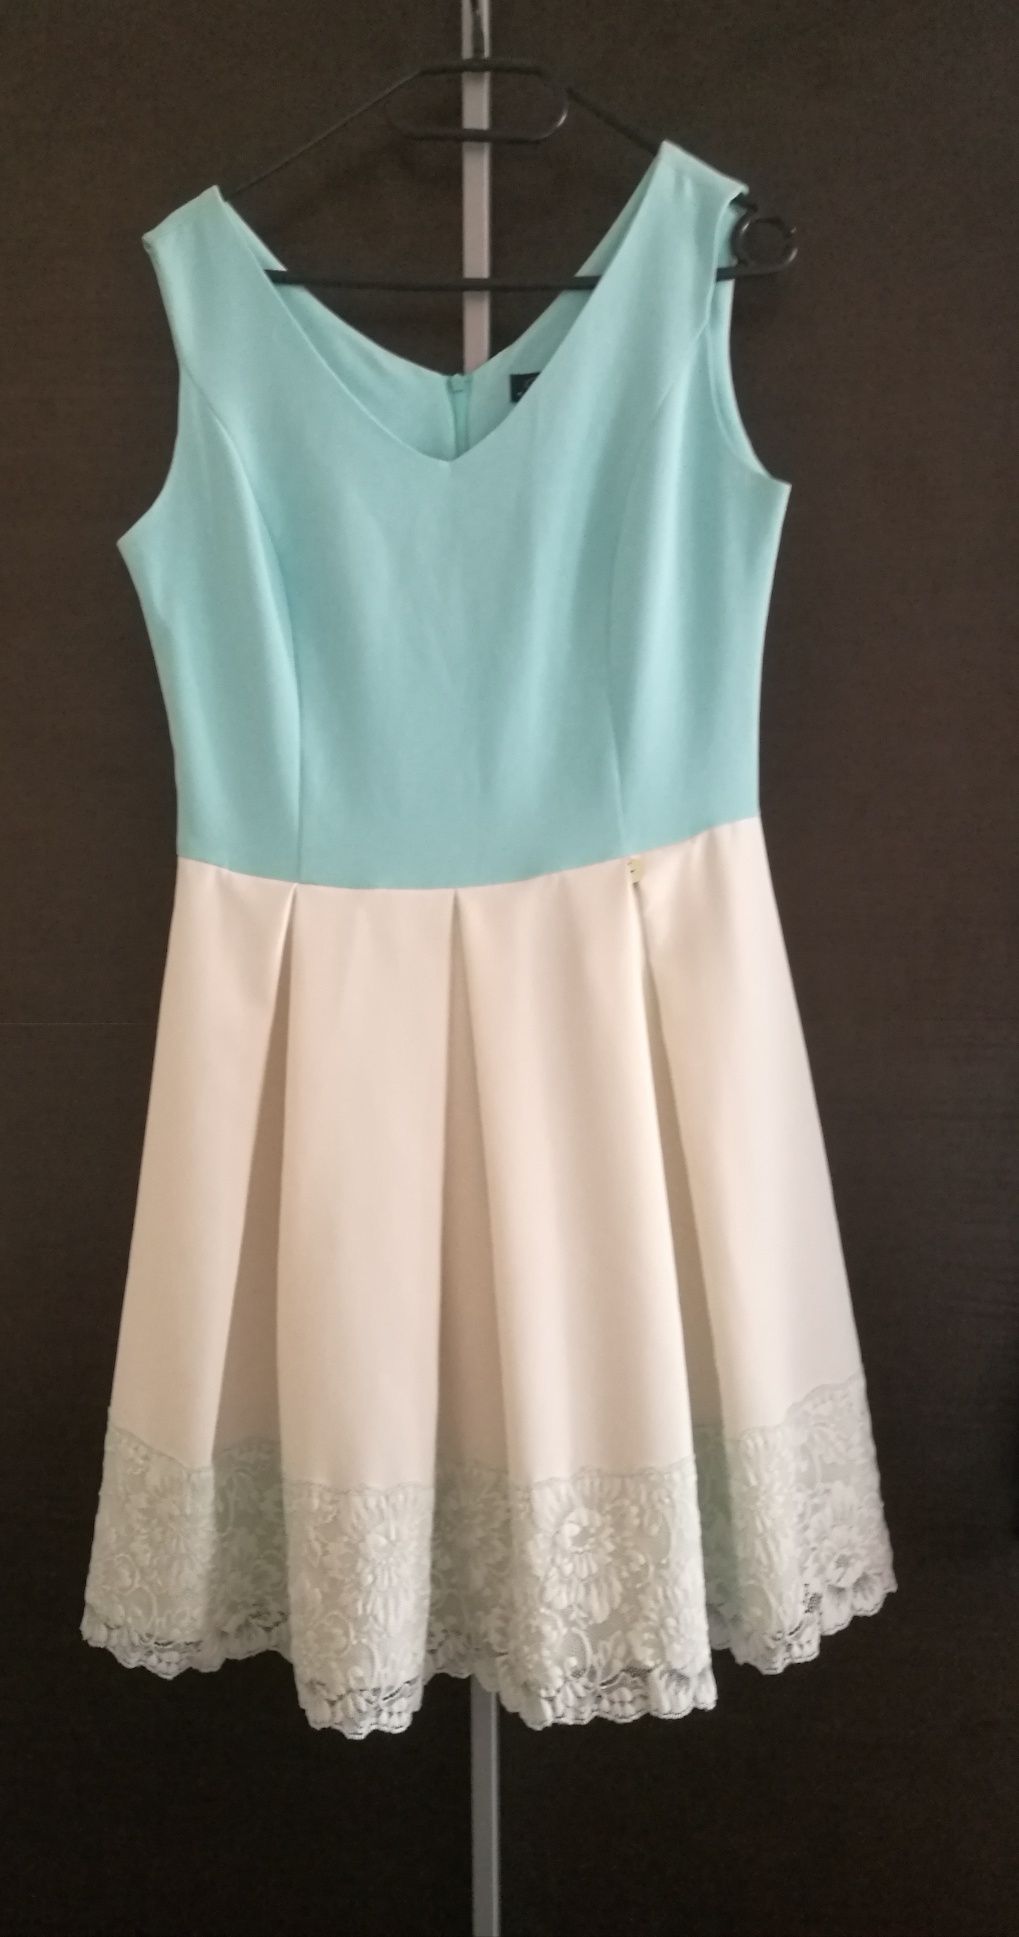 Błękitno kremowa elegancka sukienka - rozmiar S/M